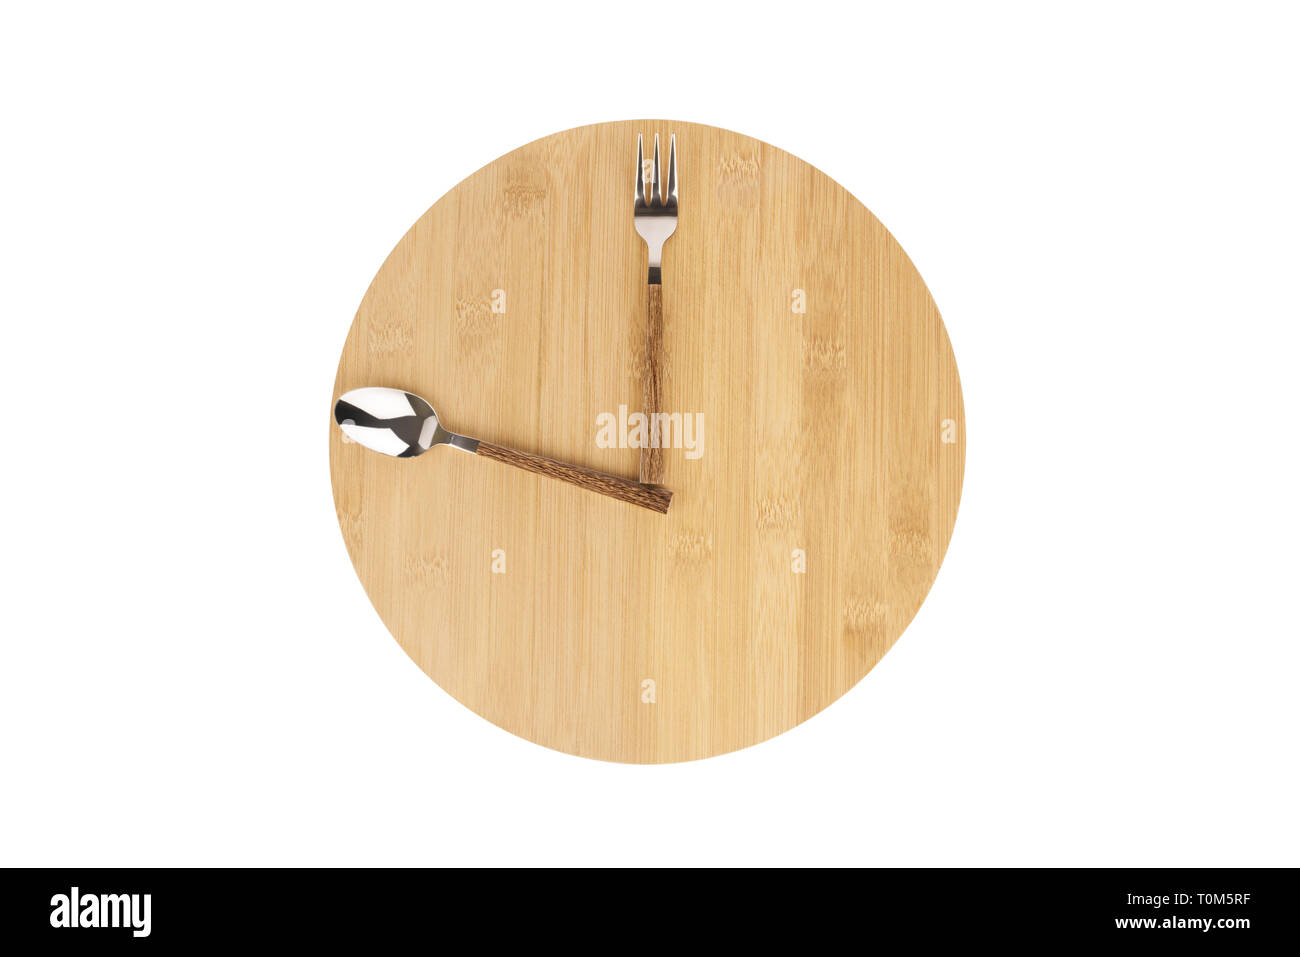 Gabel und Löffel entsorgt auf einem runden Holztafel, die Zeit für das Mittagessen als Uhr anzuzeigen. Stockfoto